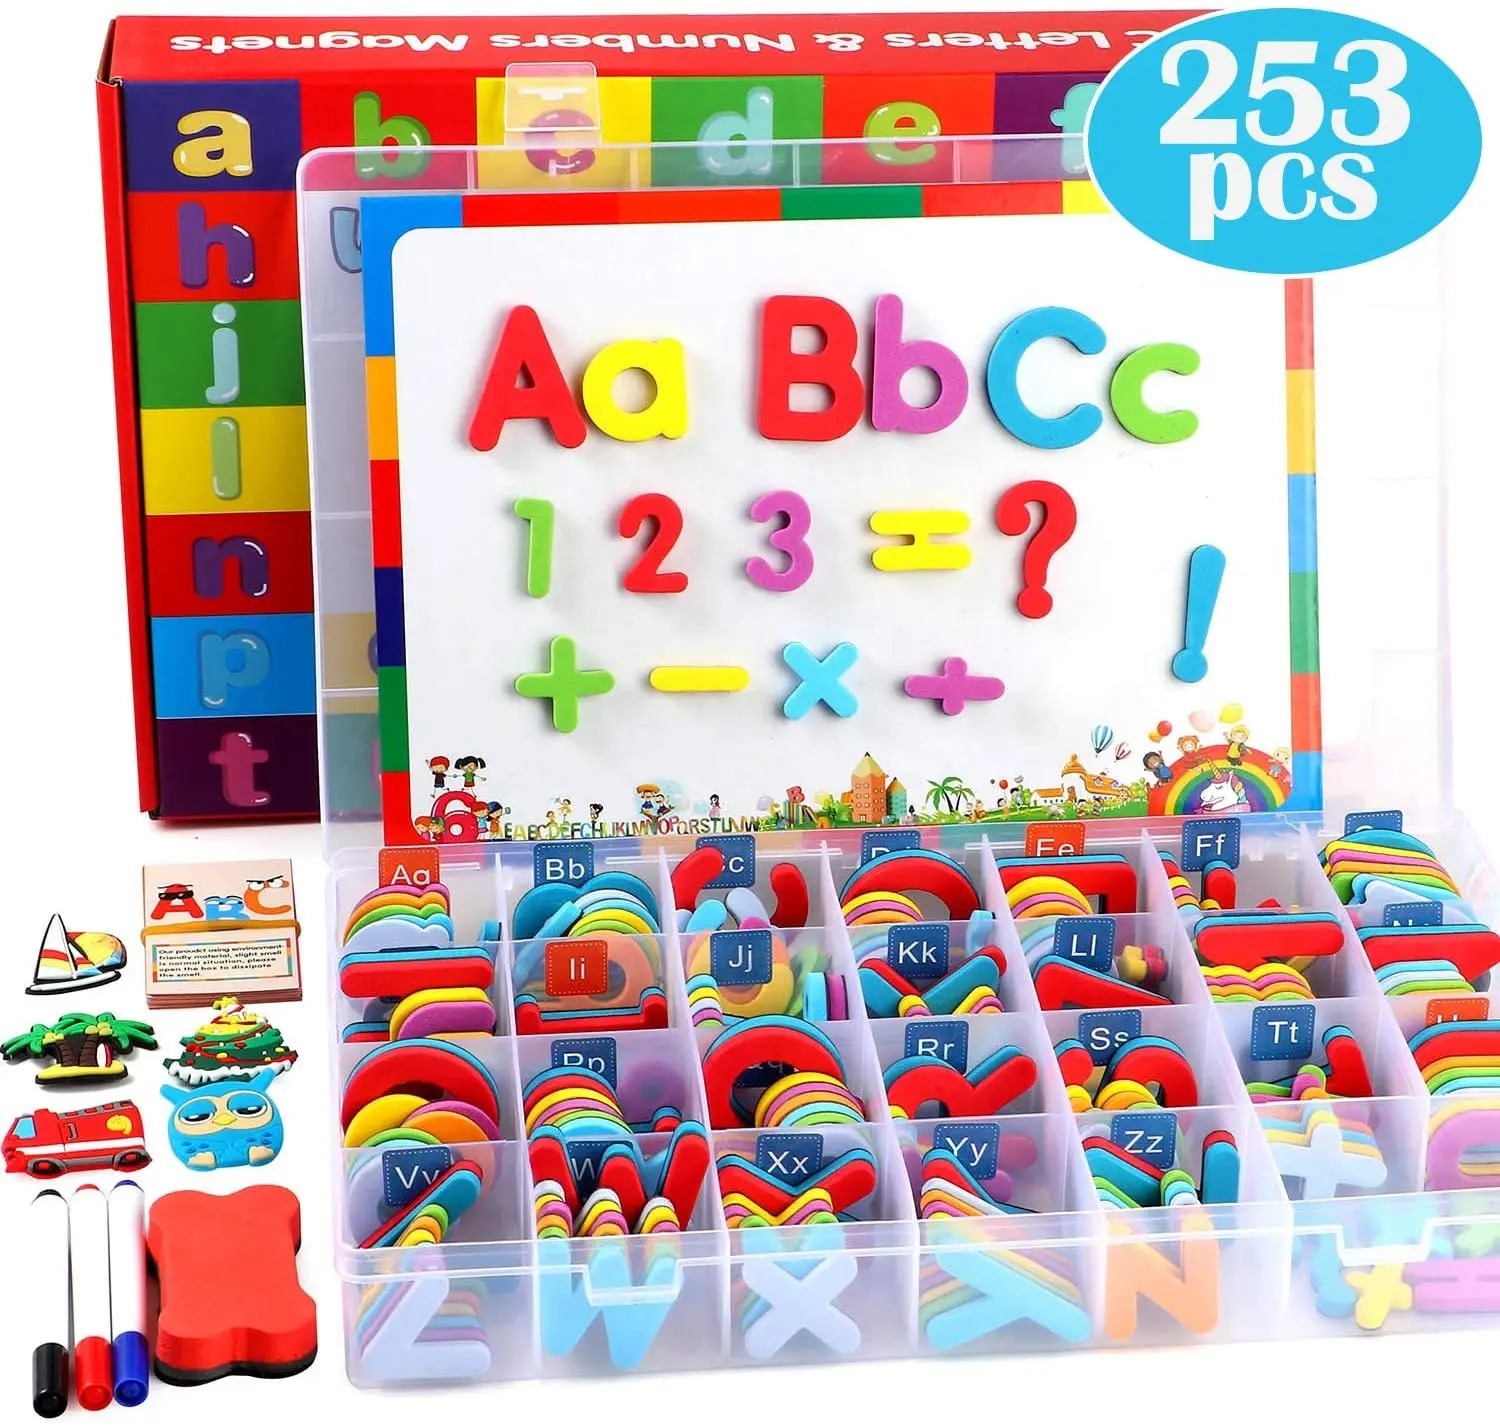 Милые игрушки, пластиковые буквы алфавита, магнитные буквы из пенопласта и цифры для обучения детей